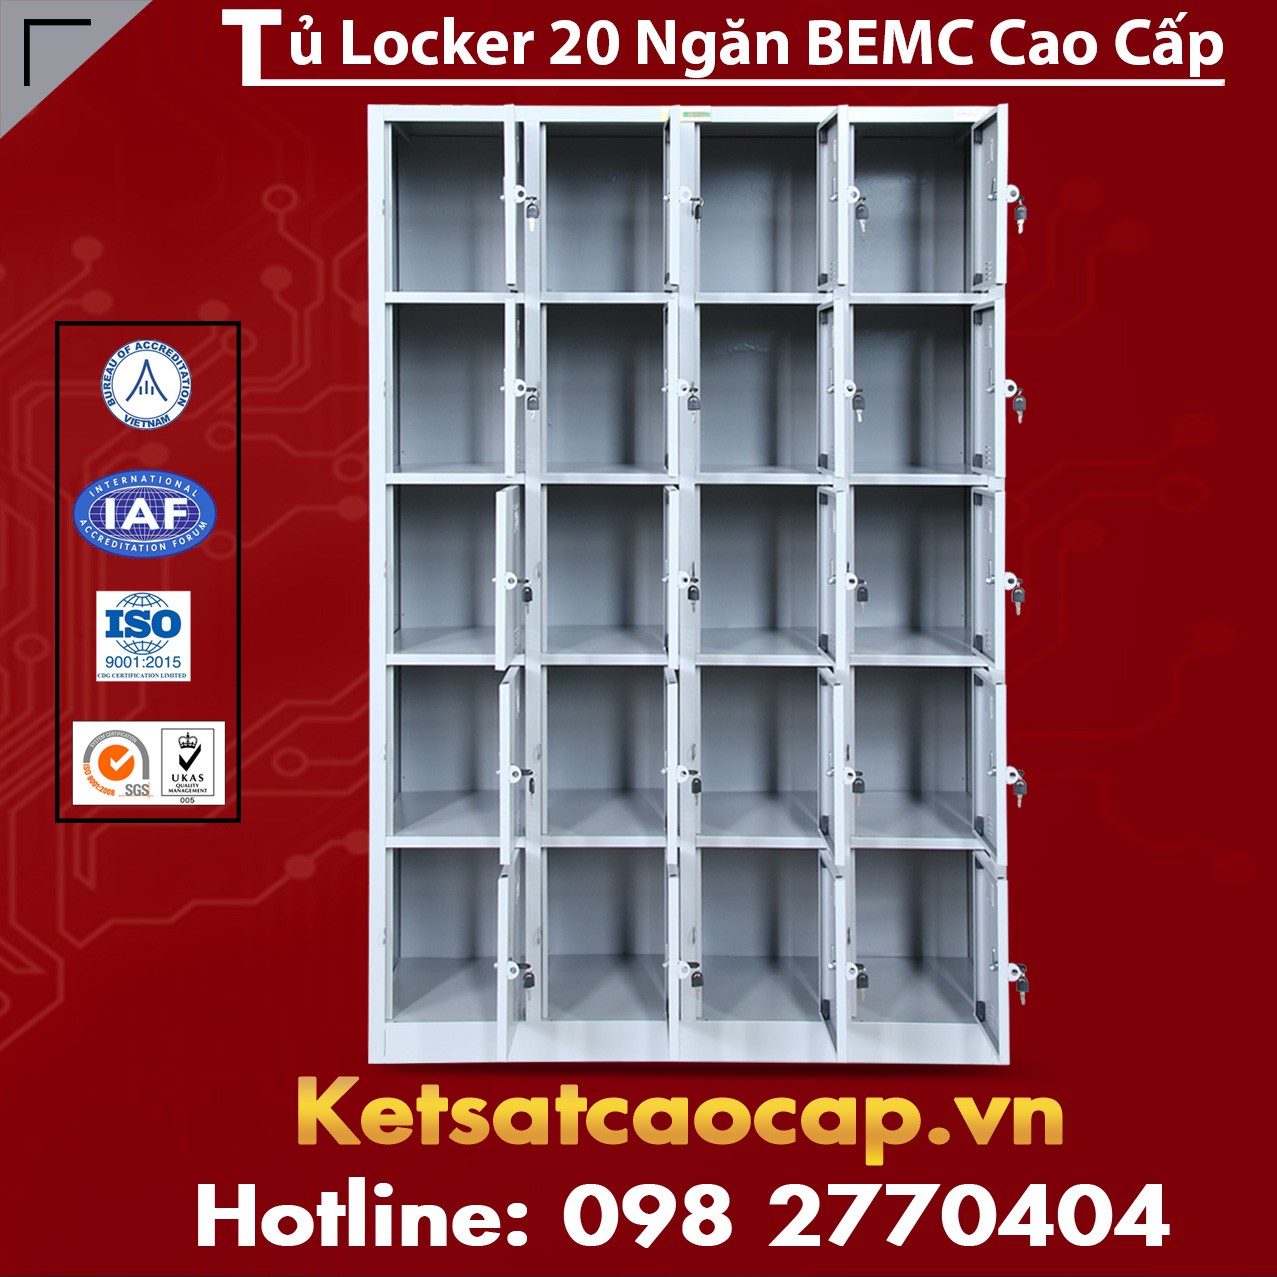 Tủ Locker BEMC 20 Ngăn